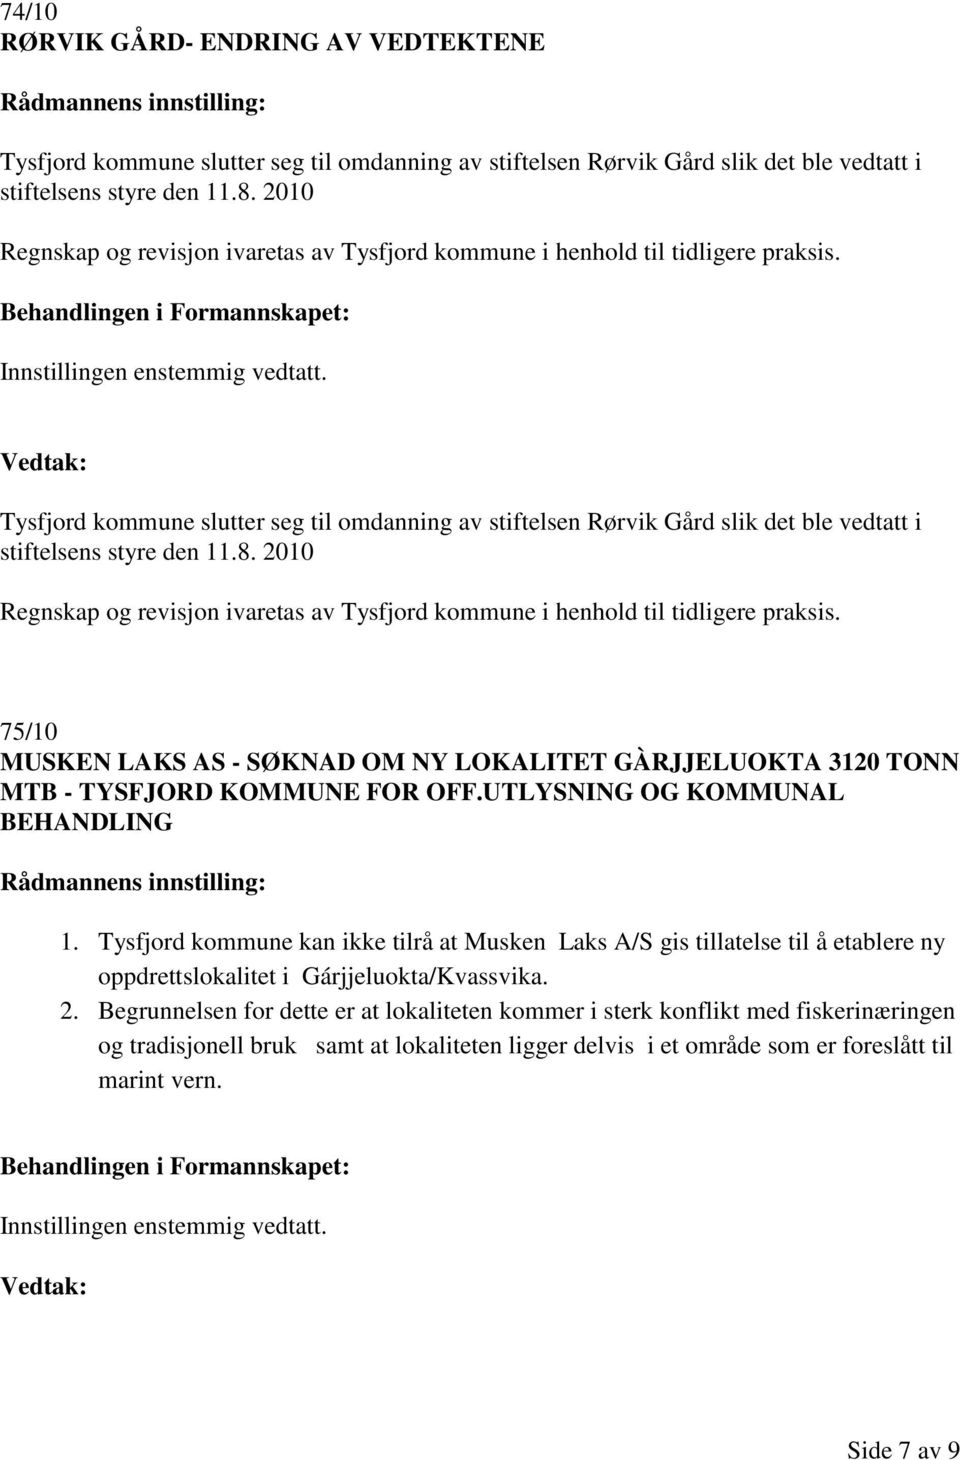 Tysfjord kommune slutter seg til omdanning av stiftelsen Rørvik Gård slik det ble vedtatt i stiftelsens styre den 11.8.